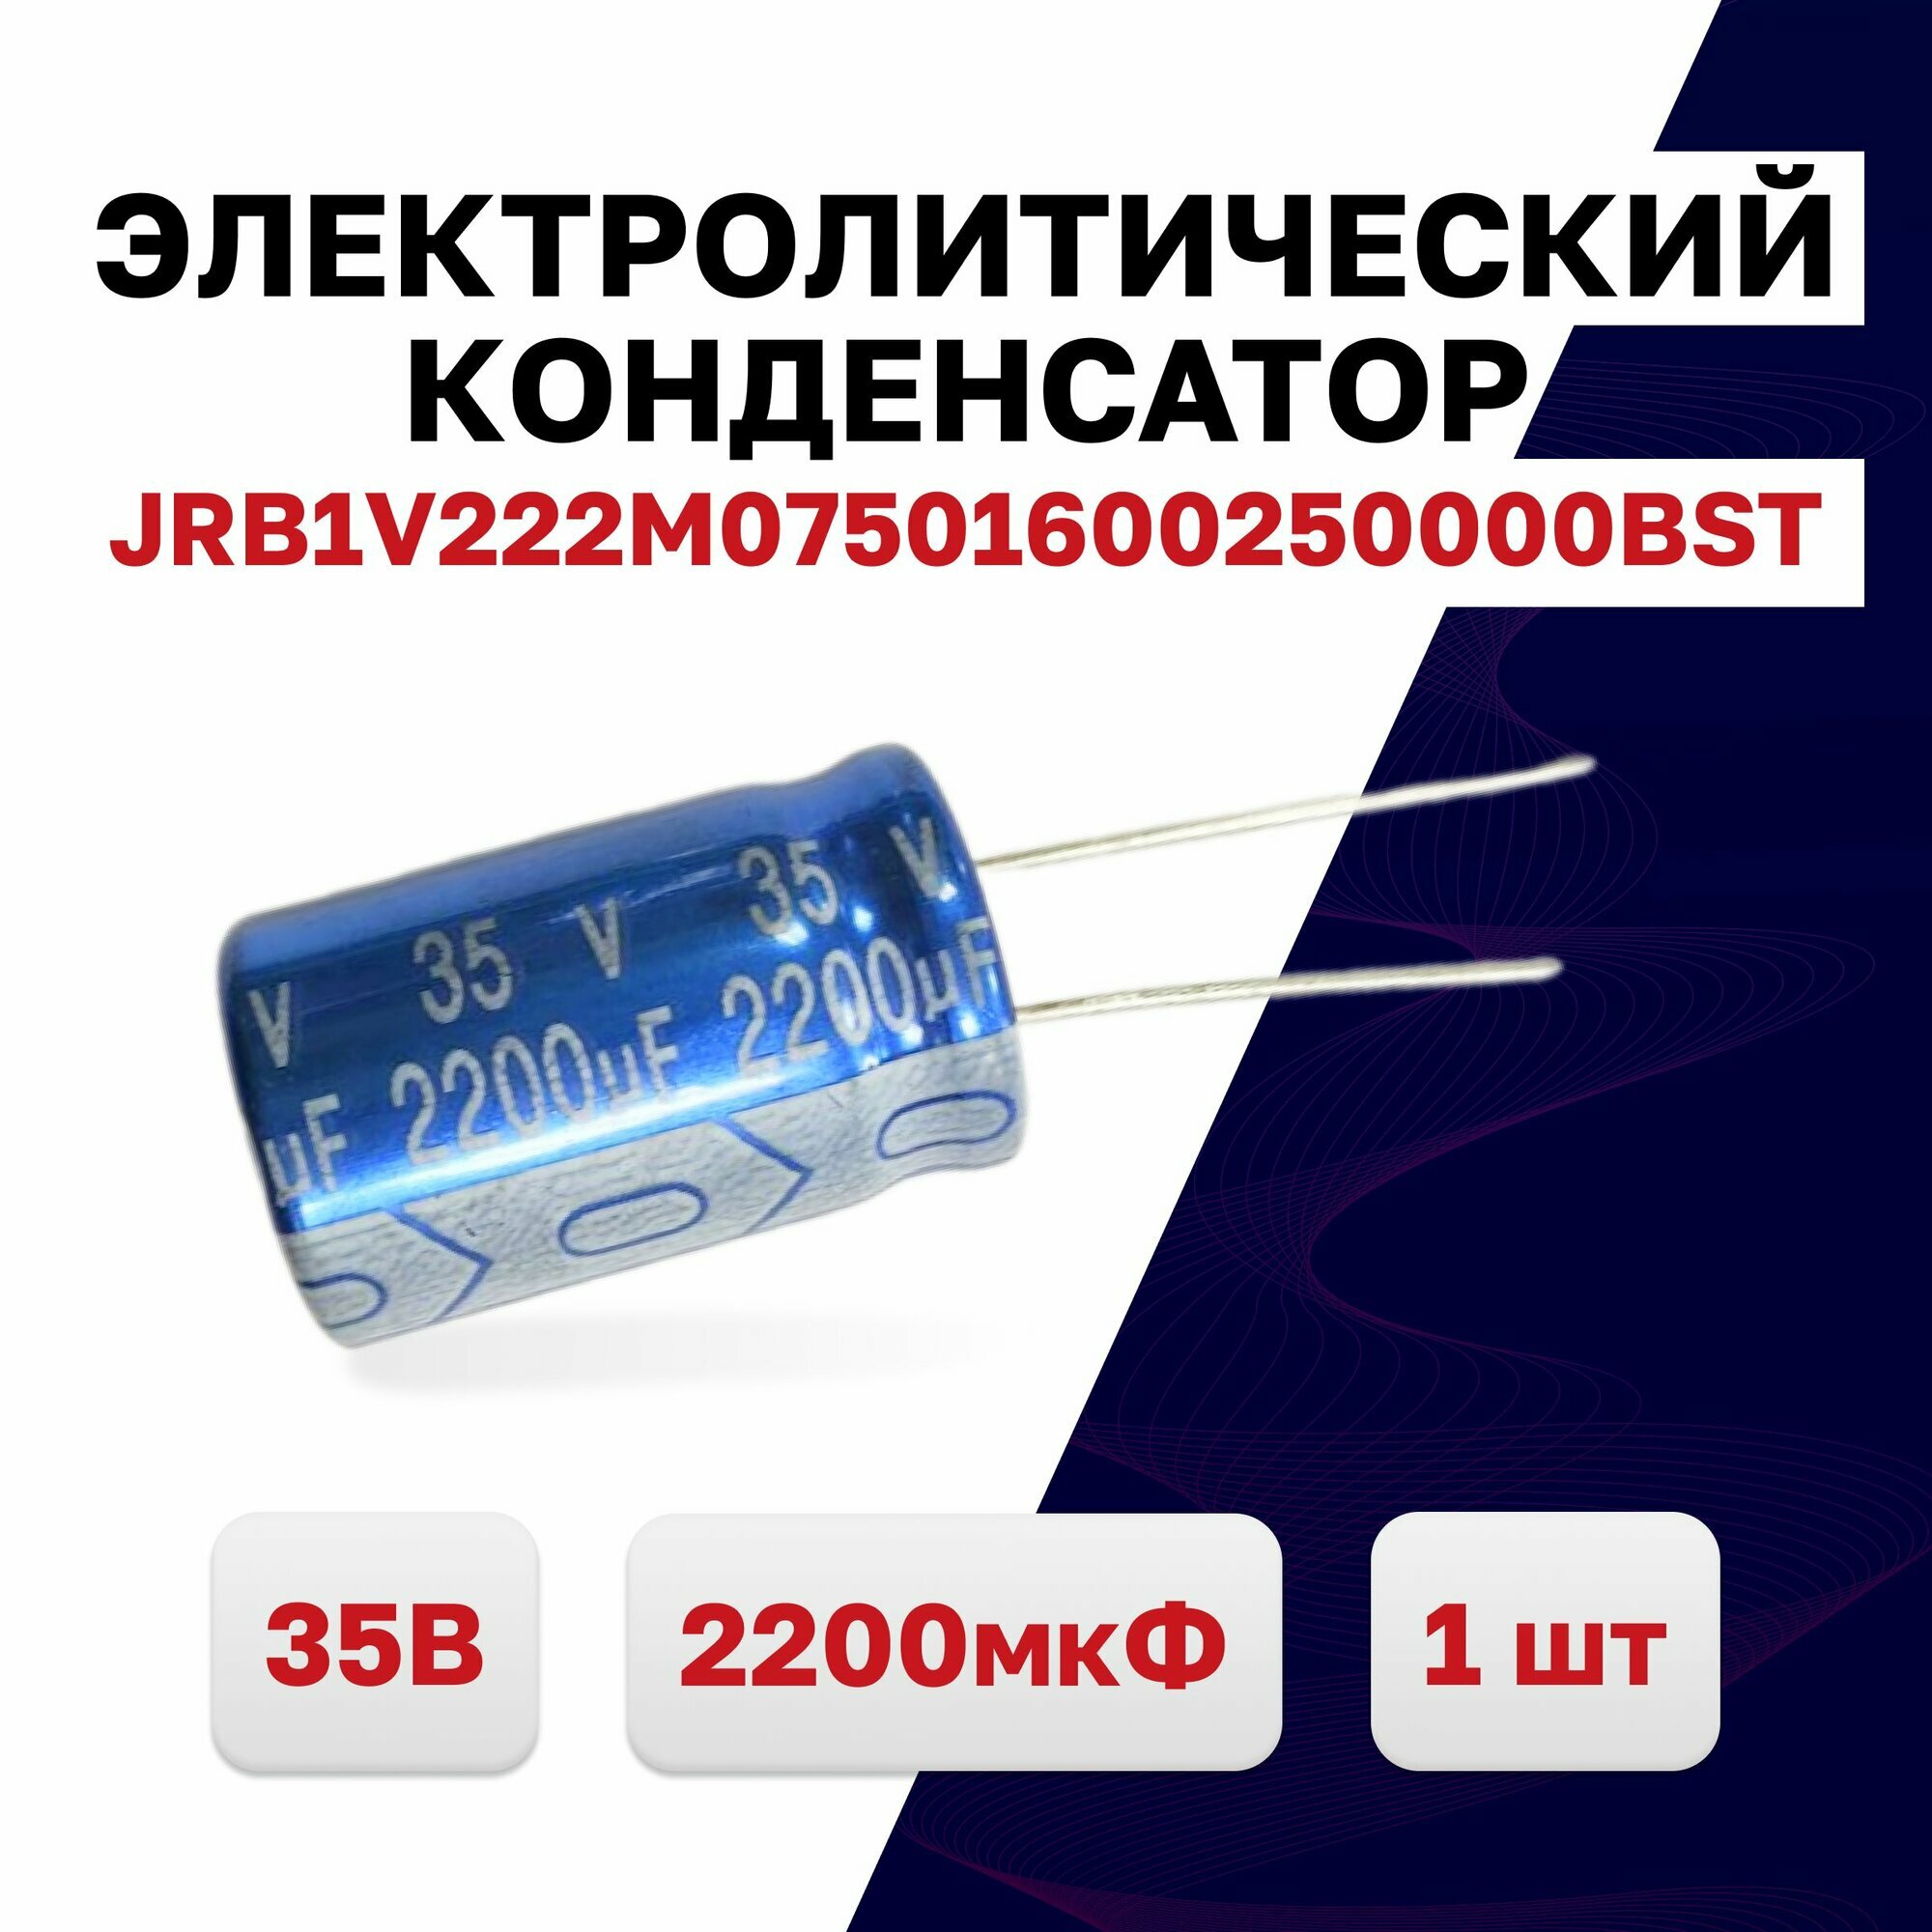 JRB1V222M07501600250000BST, конденсатор электролитический 35В 2200мкФ 105C, 1 шт.